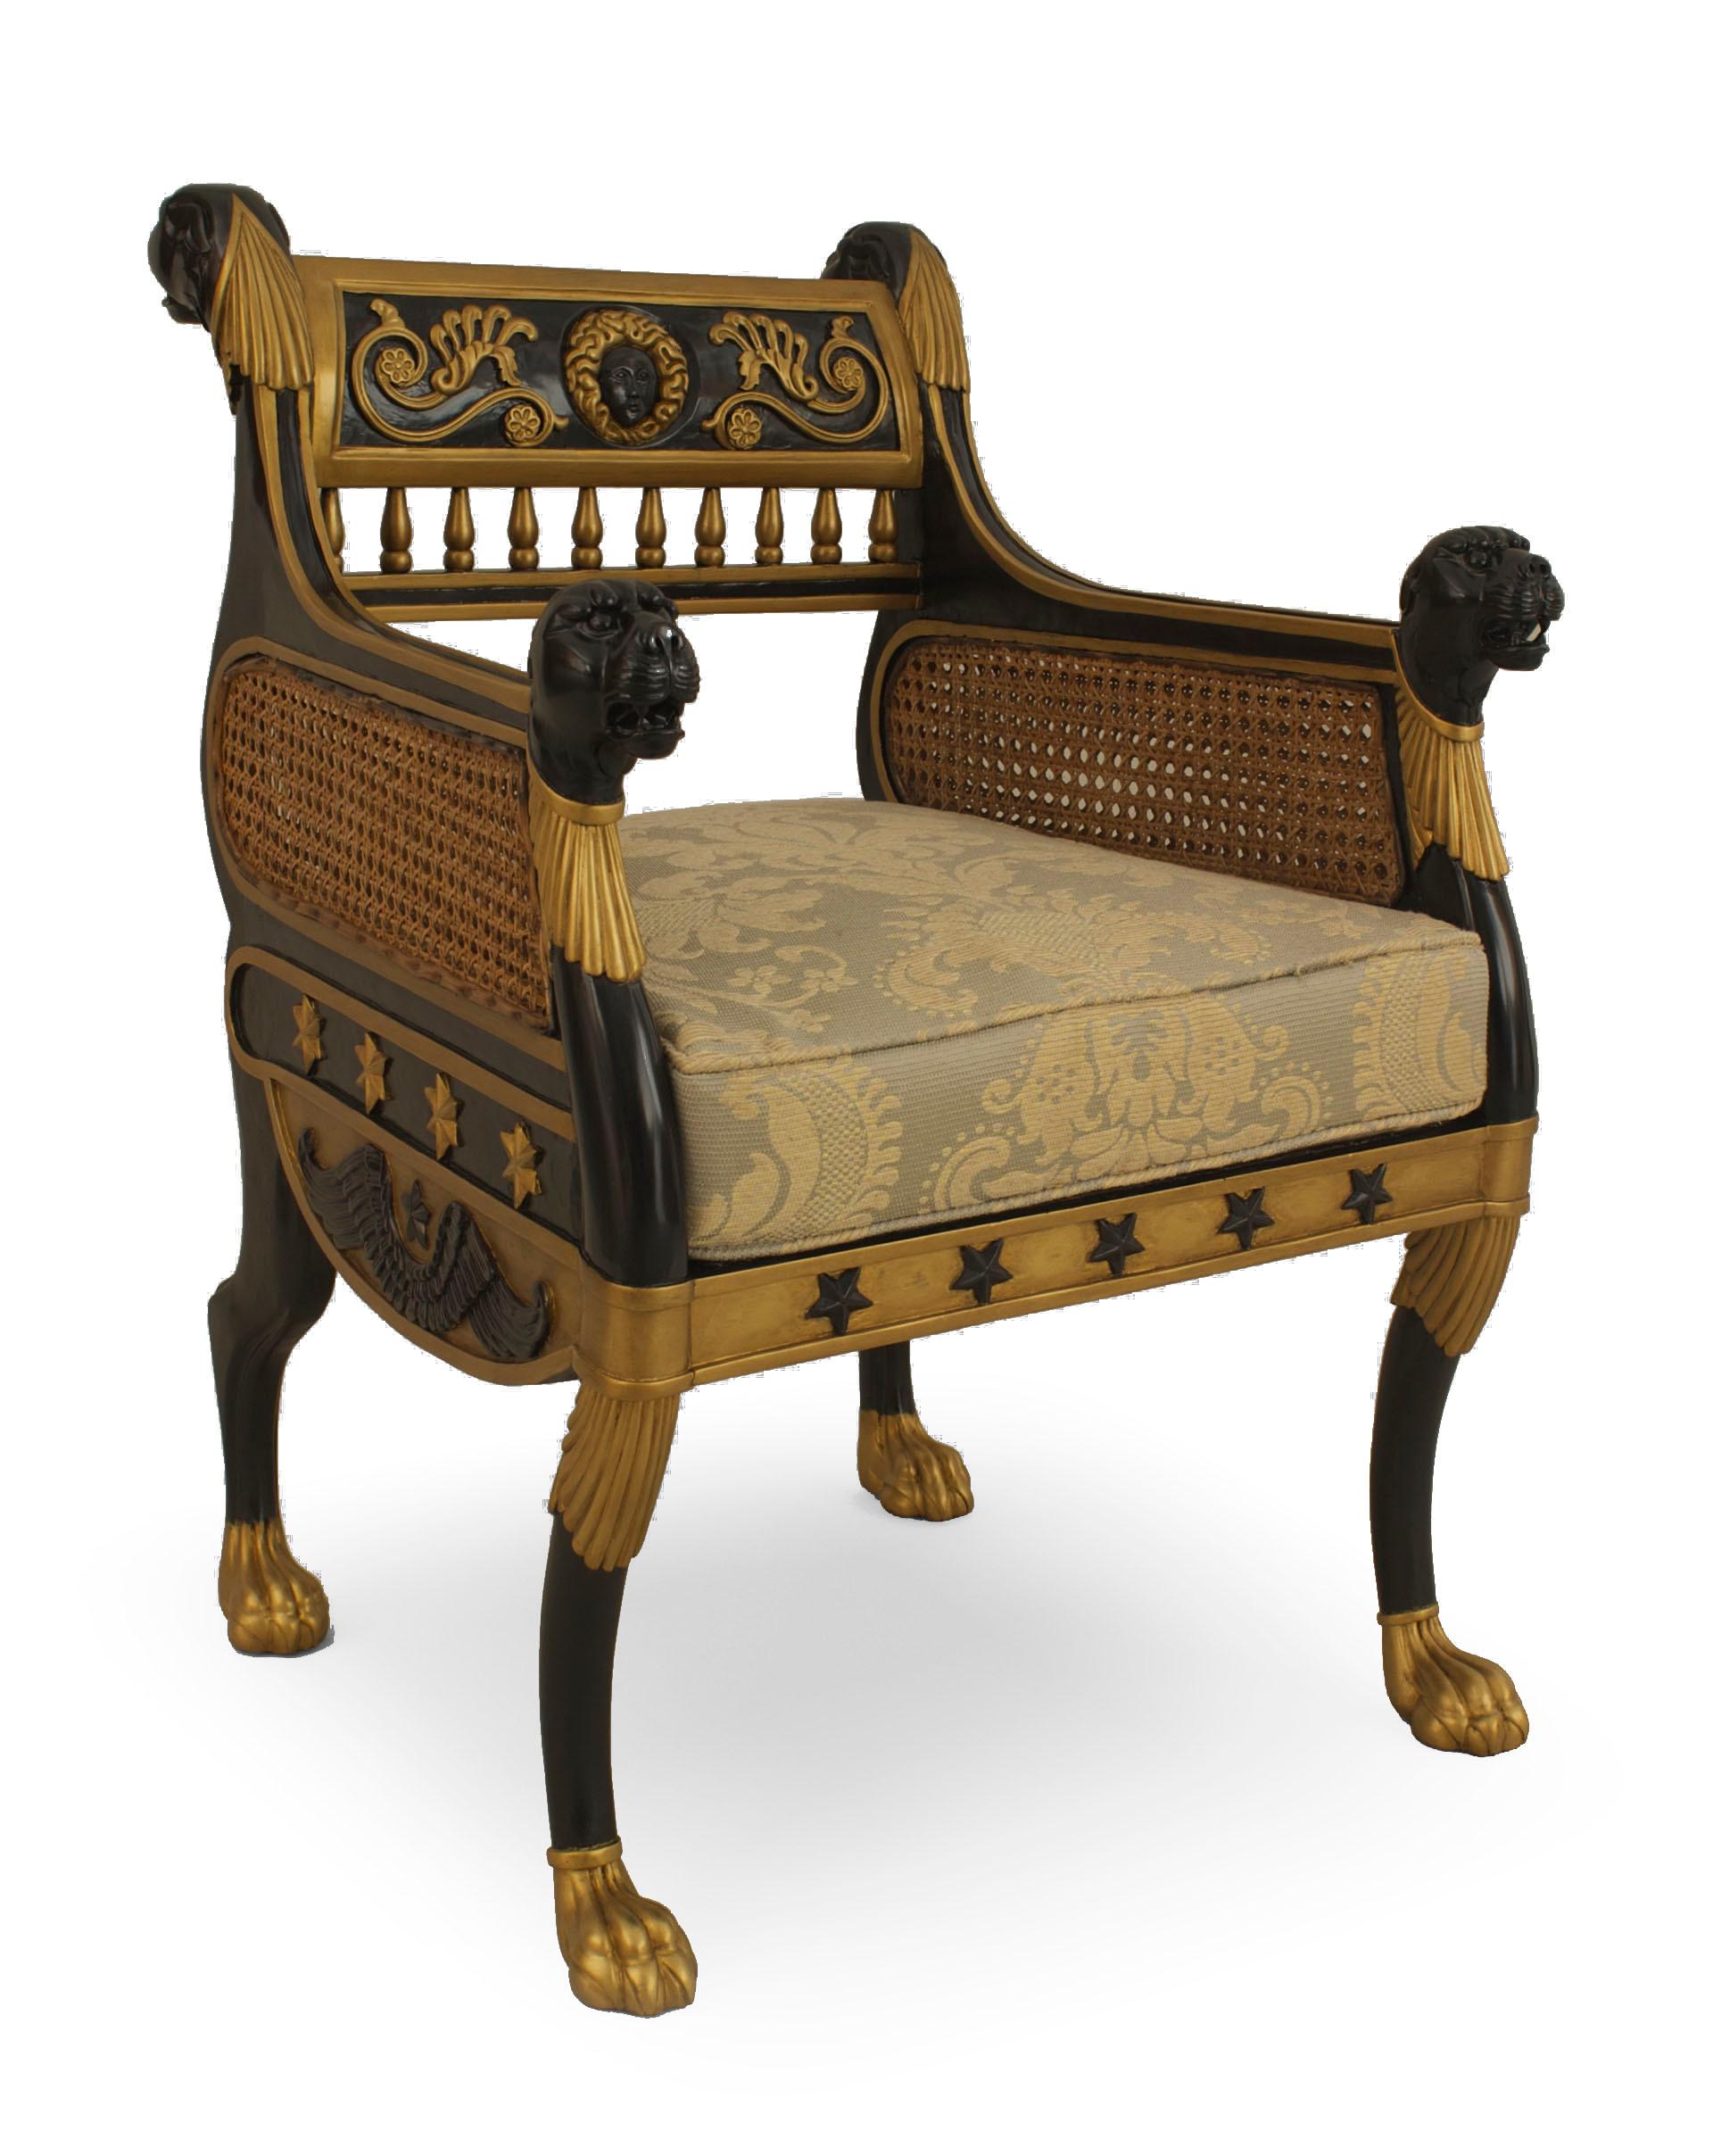 Pairof English Regency (20. Jahrhundert) ebonisiert und vergoldet trimmen bergere Sessel mit Rohrseiten und geschnitzten Löwenköpfen auf Rücken und Arme. (Reproduktion des Designs von Geo Smith) .